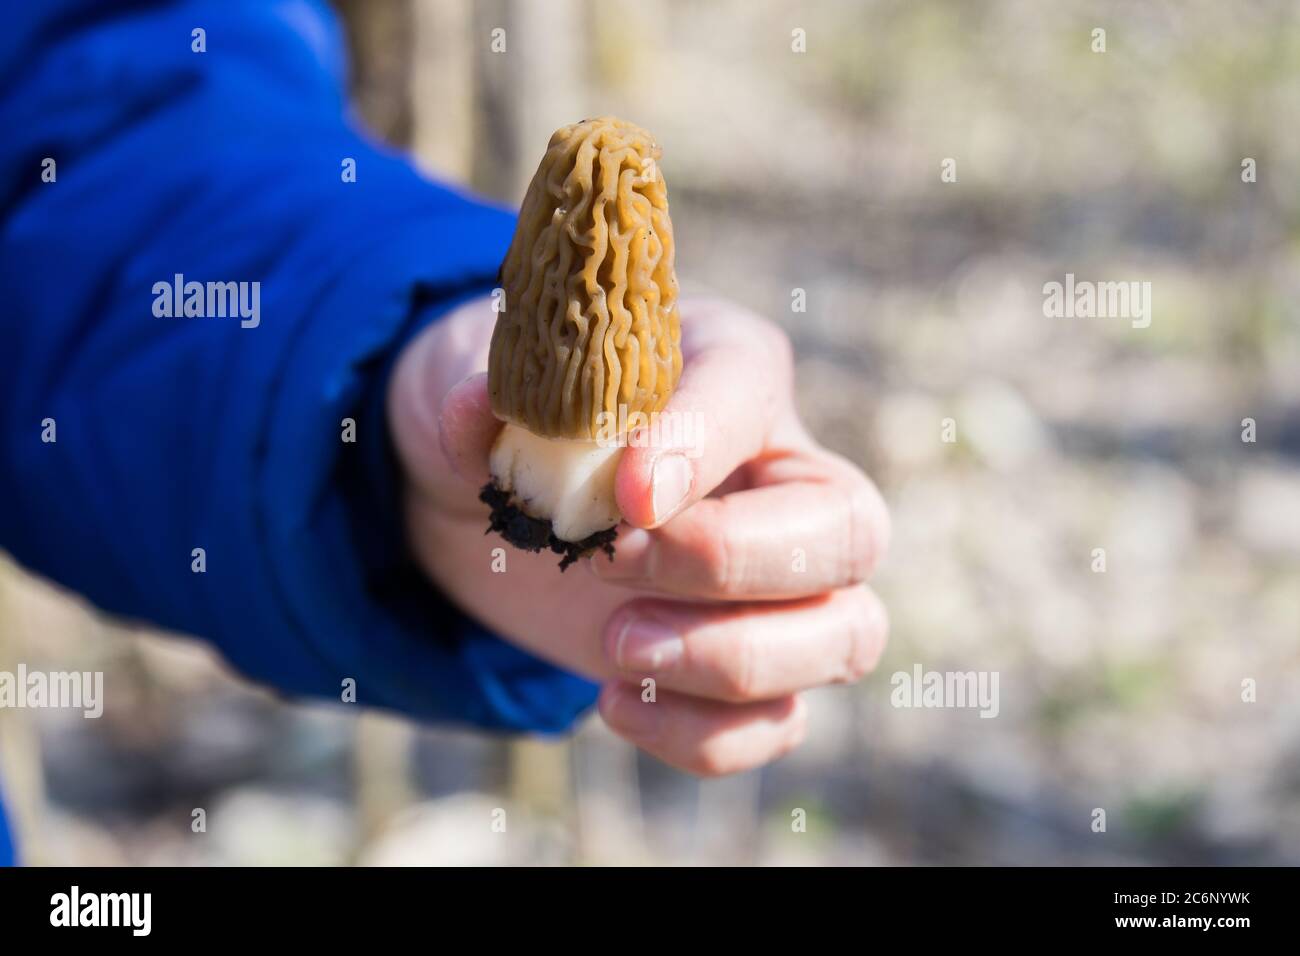 Morchella champignon dans la main. Assortiment de morilles. Banque D'Images